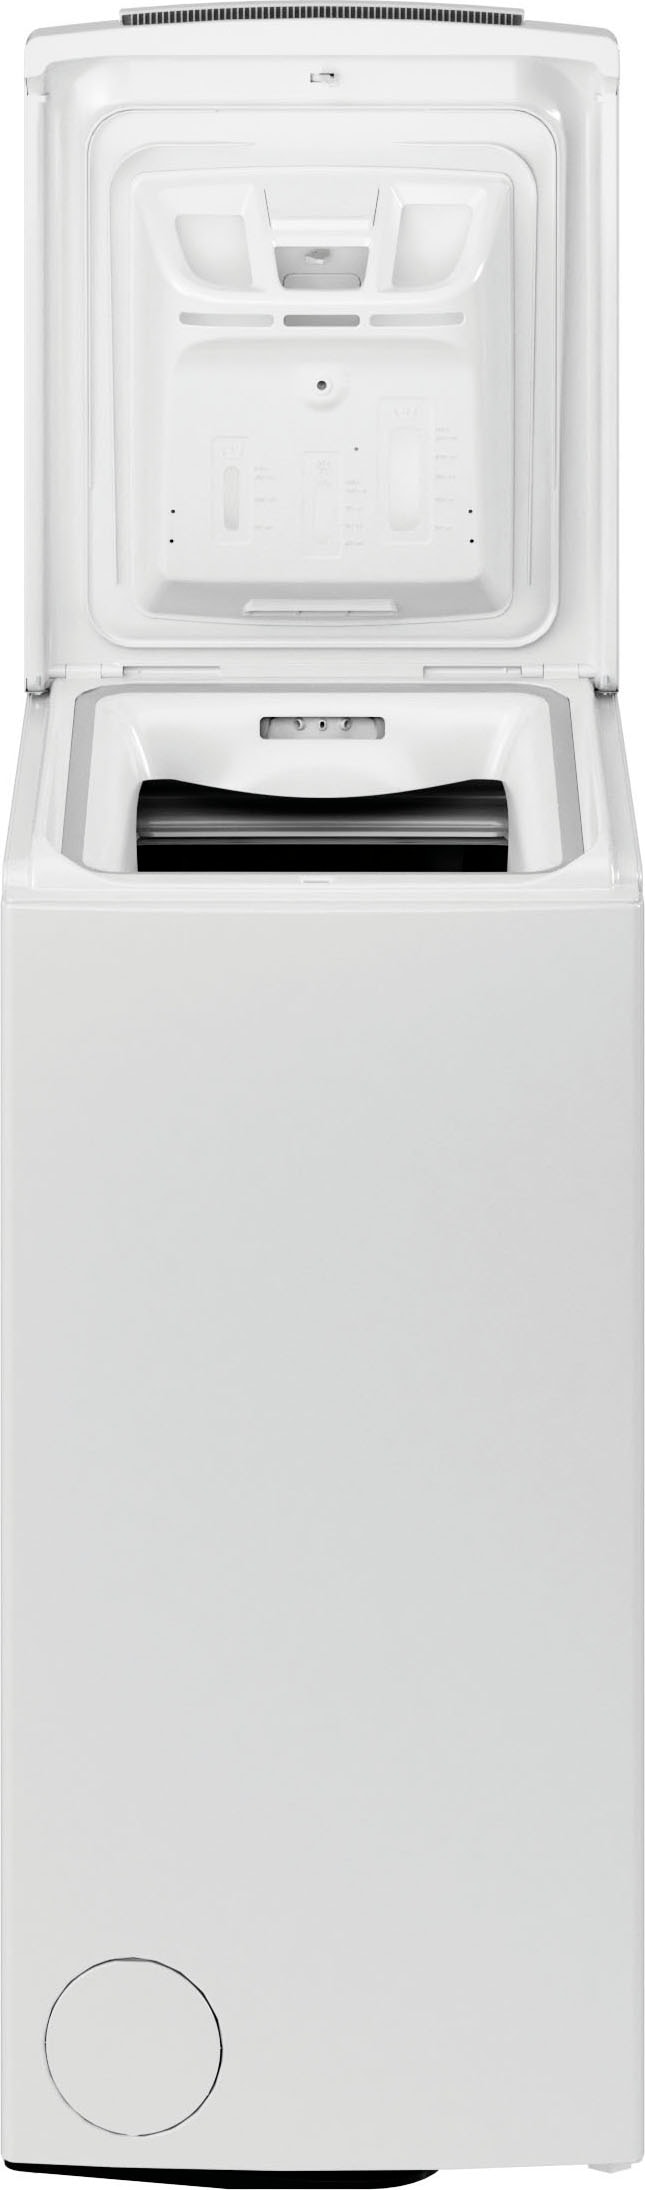 BAUKNECHT Waschmaschine Toplader »WMT BK 126 B«, WMT BK 126 B, 6 kg, 1200 U/min